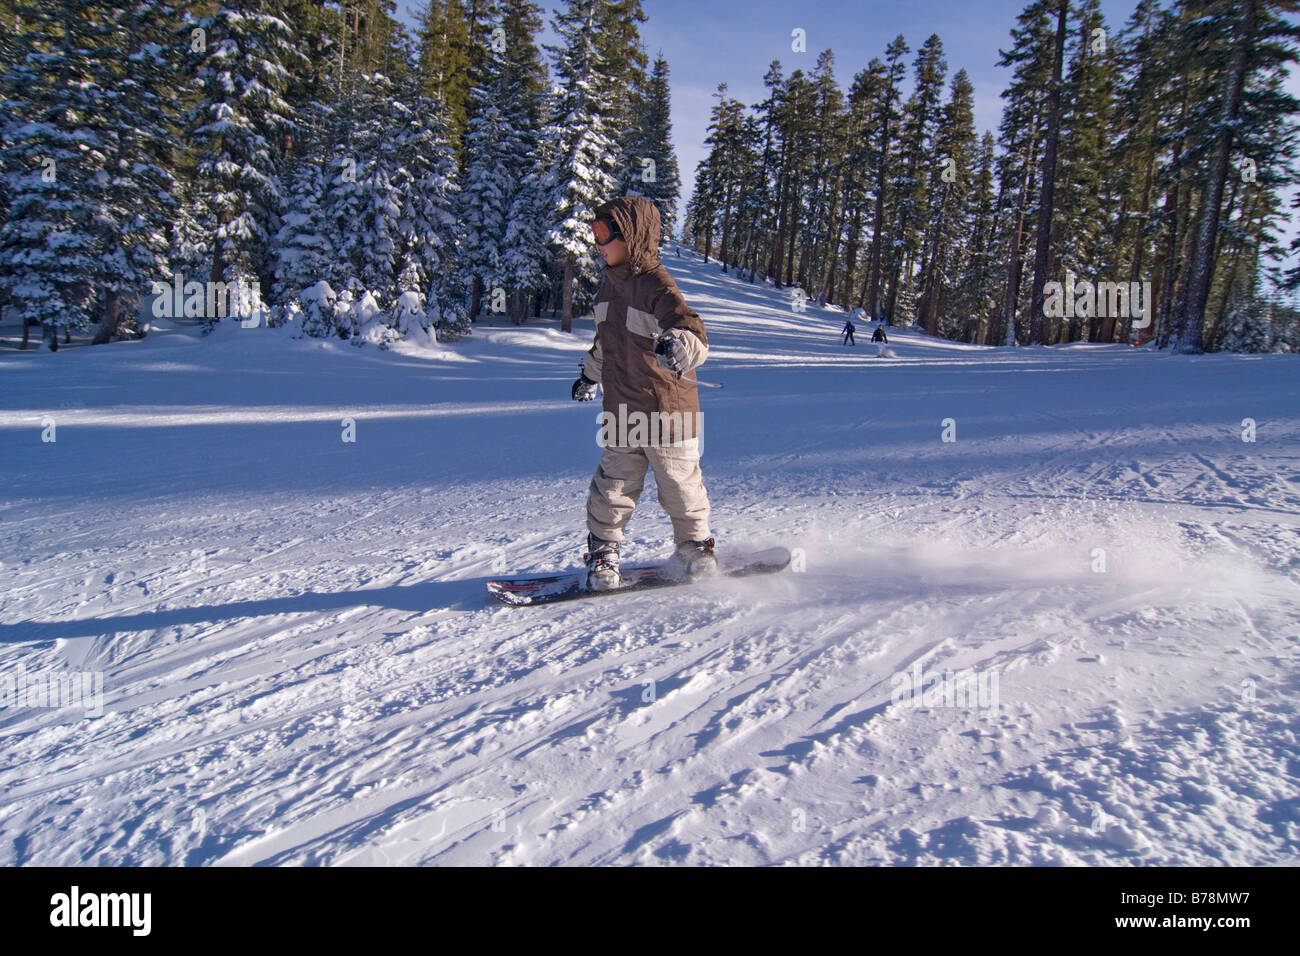 Un garçon de planche à neige de la Sierra à Tahoe ski resort, près du lac Tahoe en Californie Banque D'Images